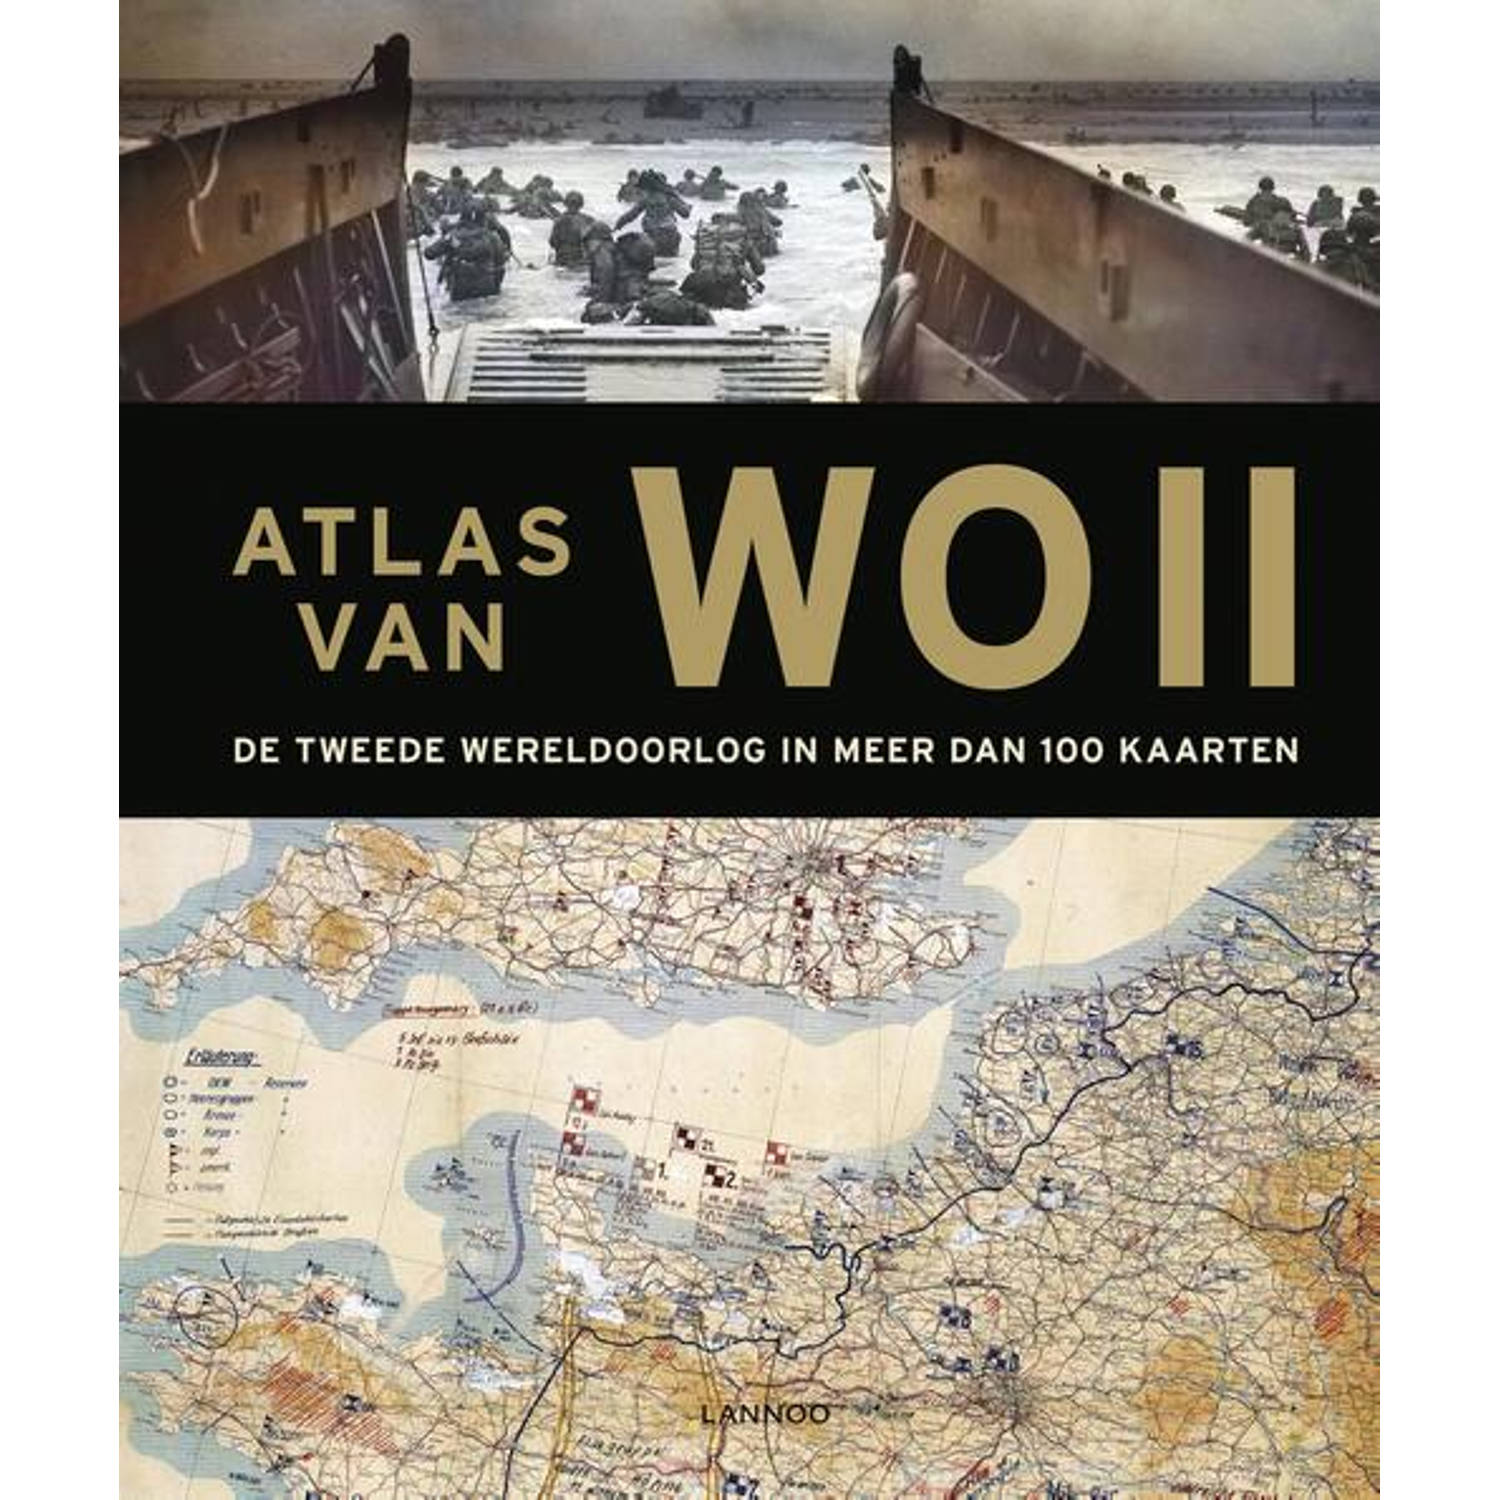 Atlas van WOII